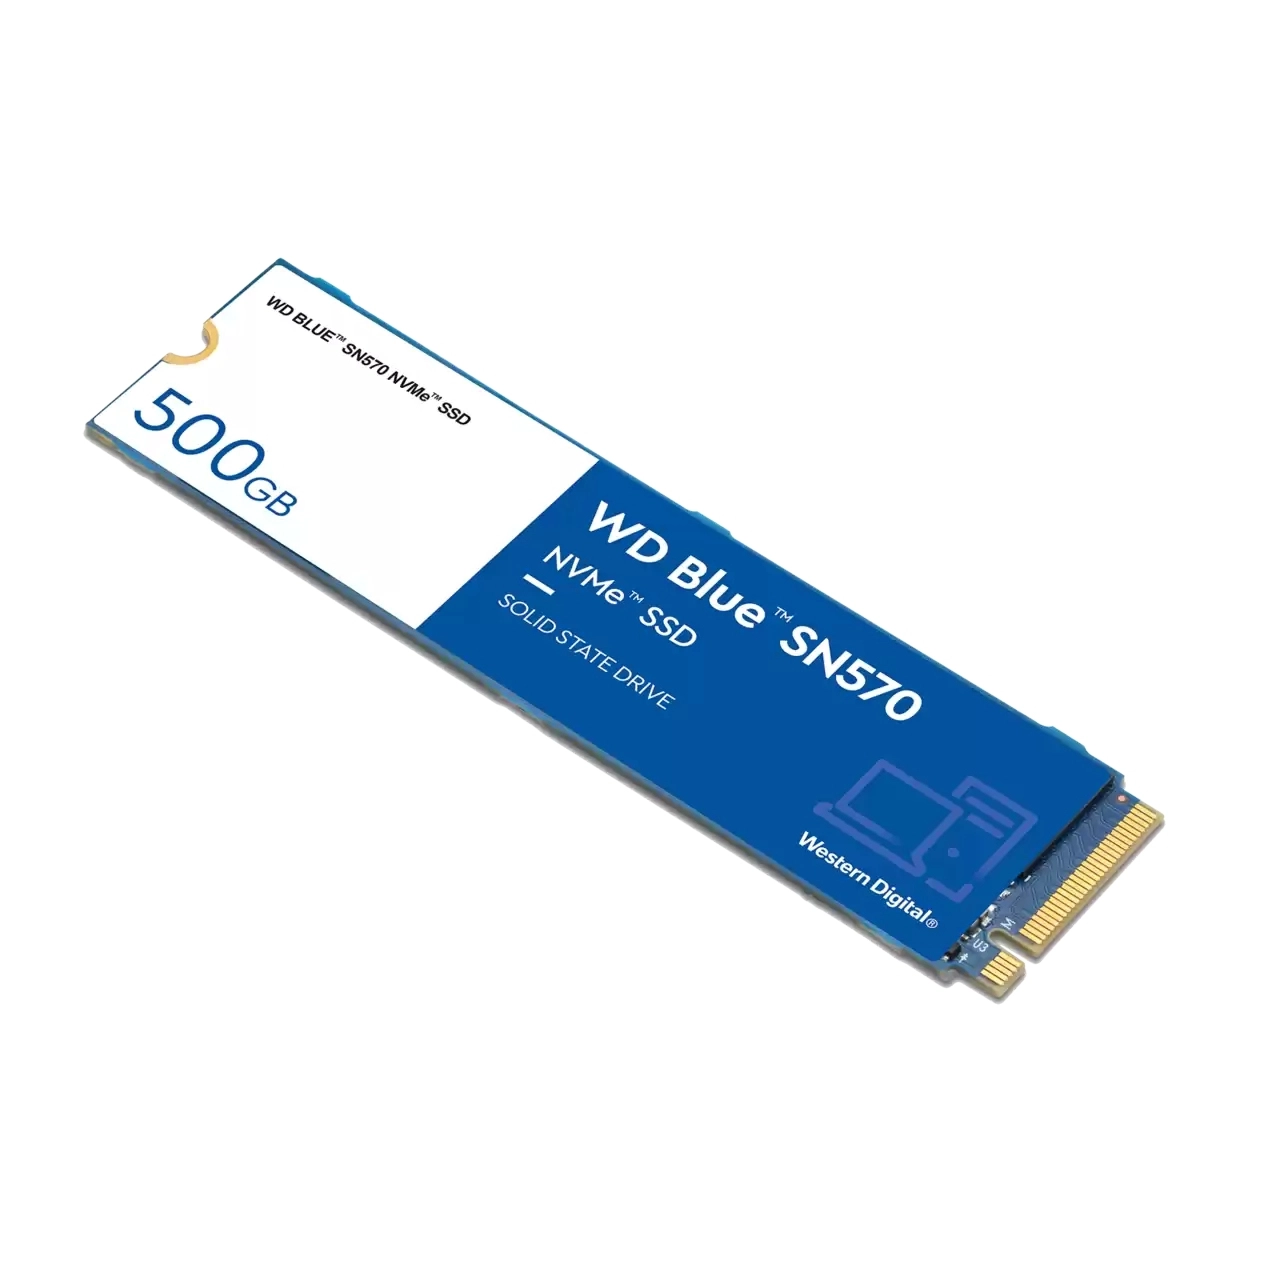 WD SSD Blue SN570 500GB PCIe Gen3 NVMe